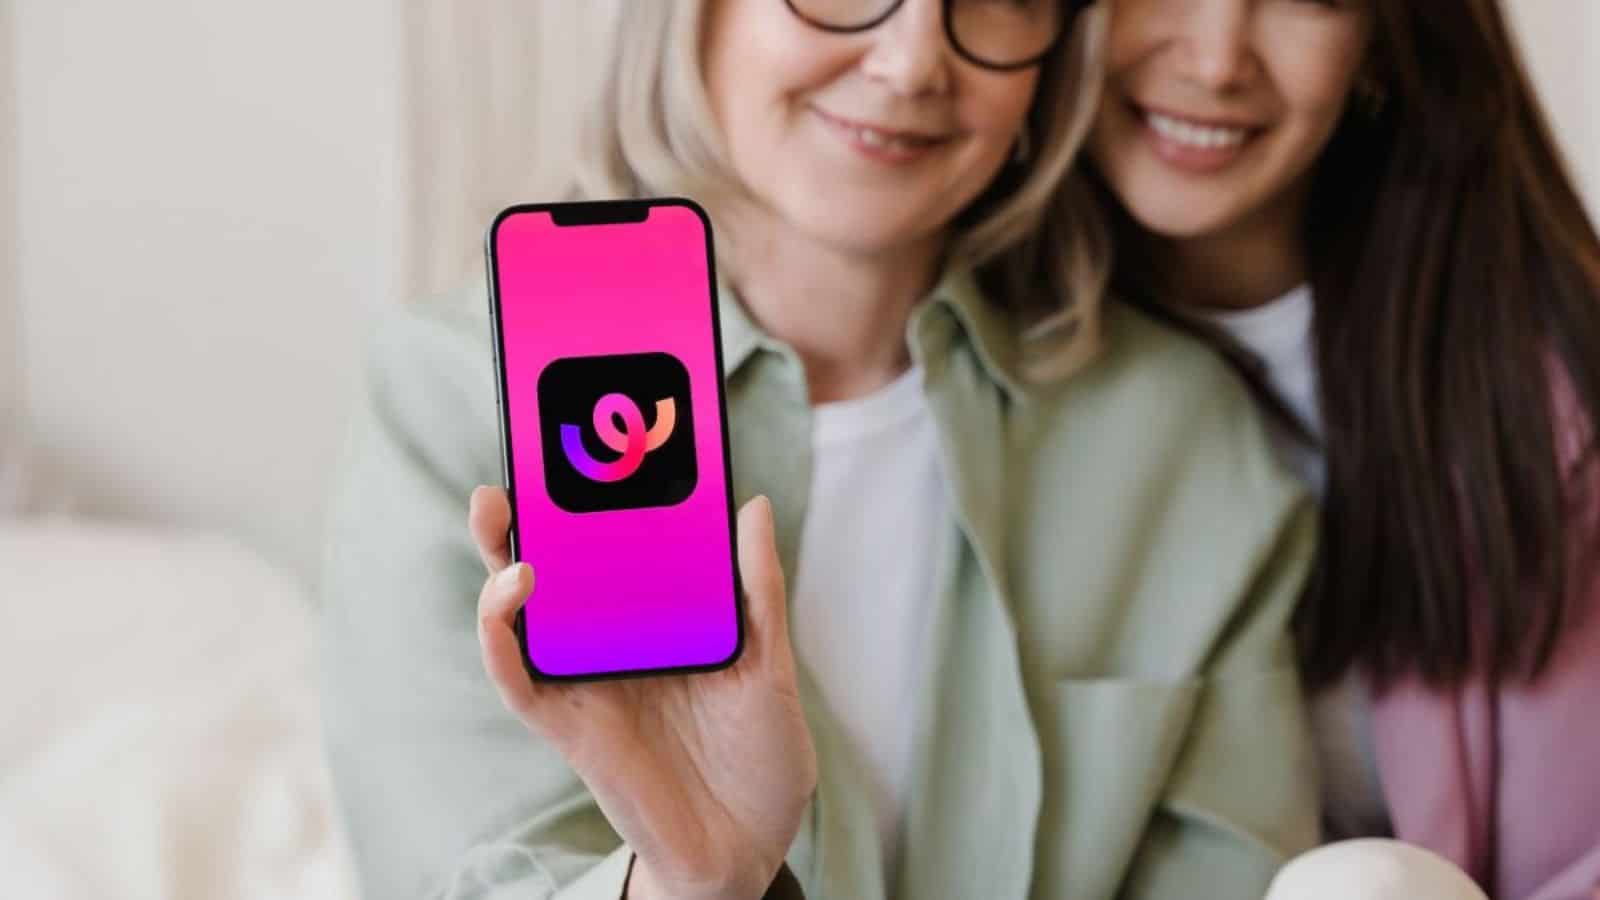 TikTok sfida Instagram: arriva improvvisamente la nuova app Whee